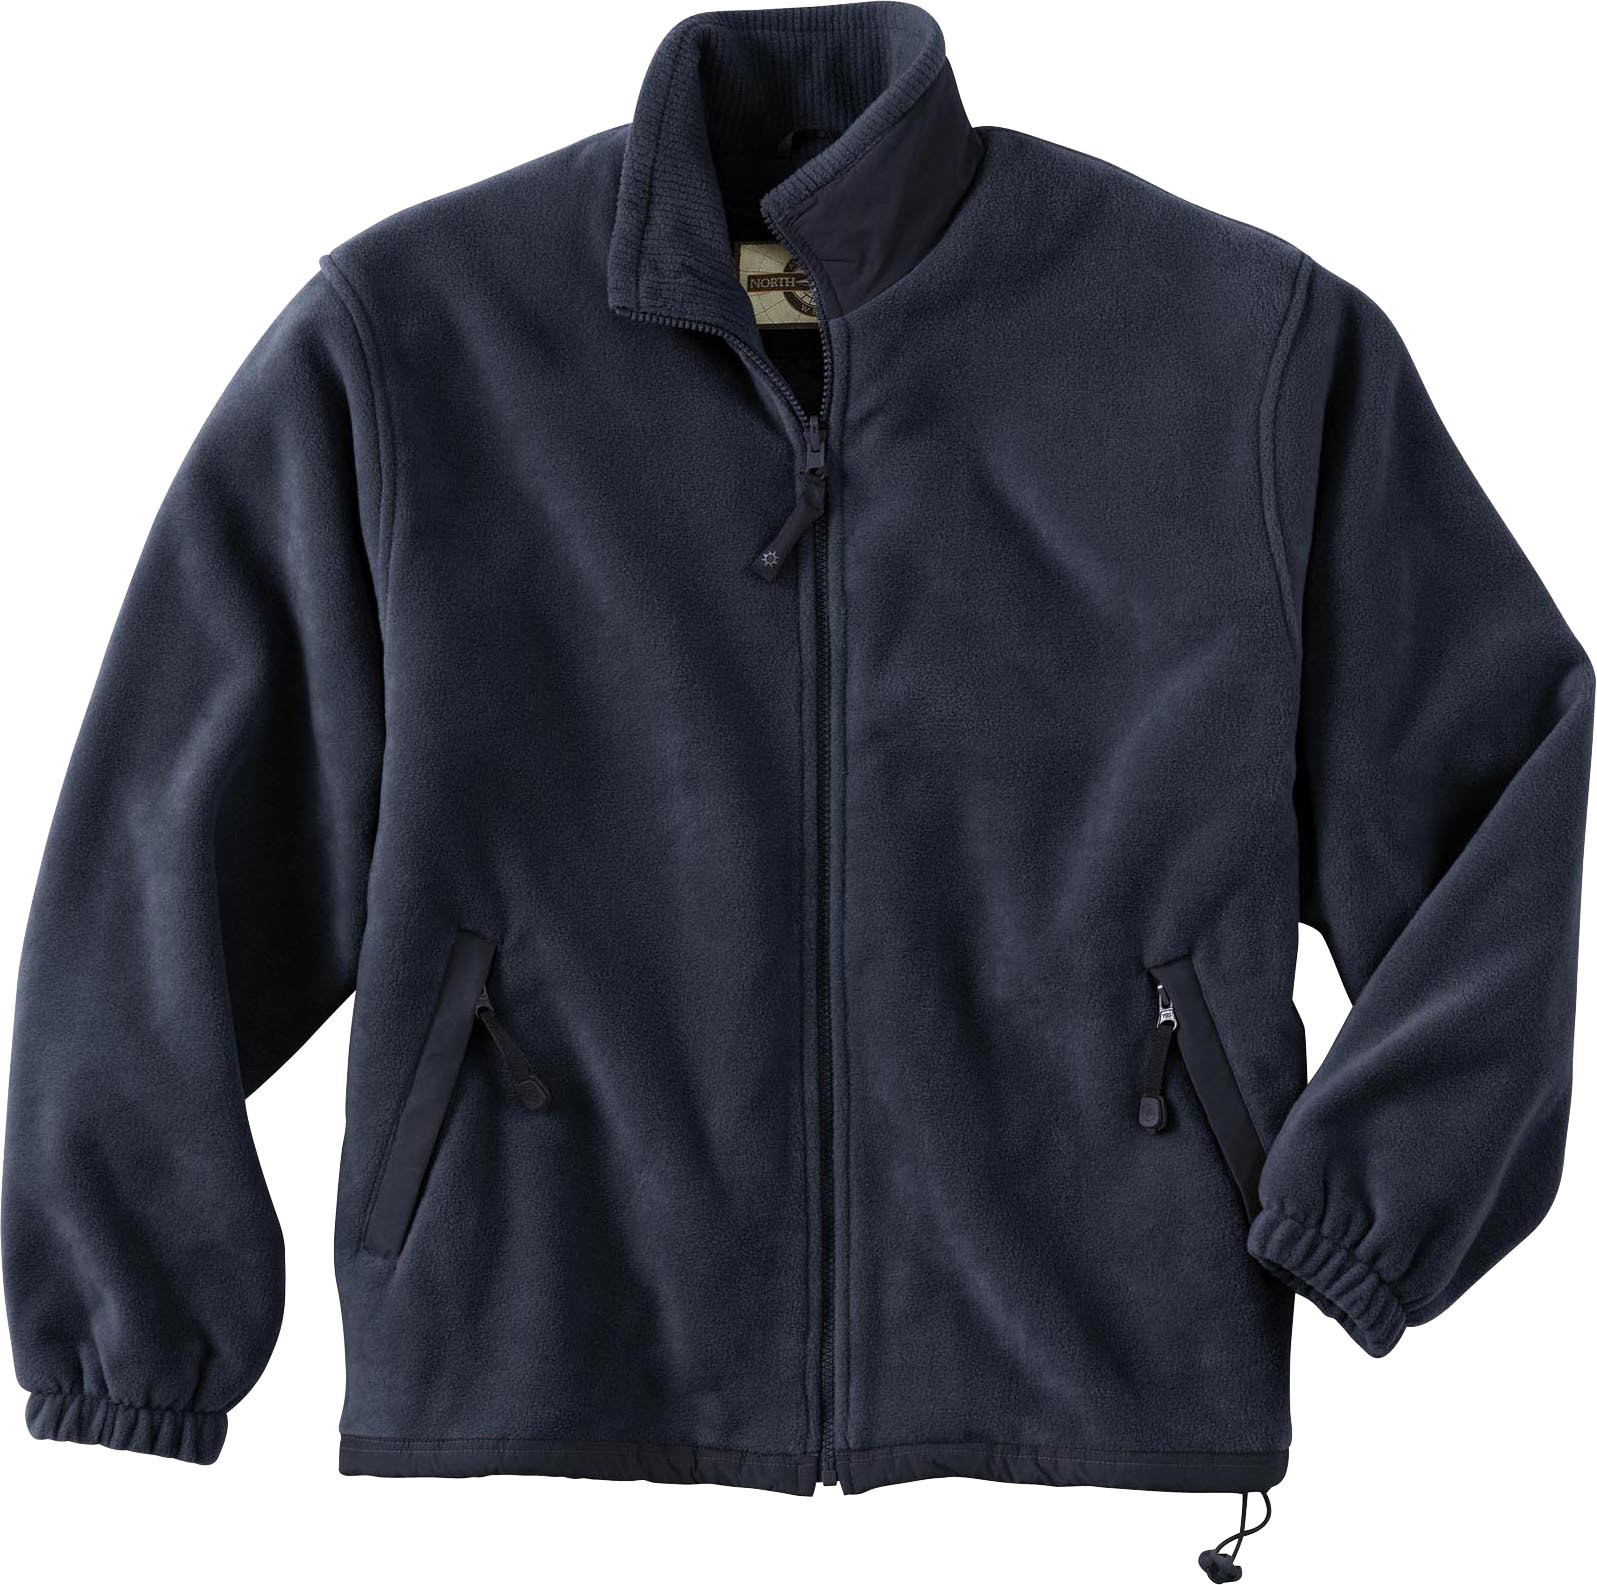 Ash City Poly Fleece 88033 - Men's Interactive Fleece Jacket